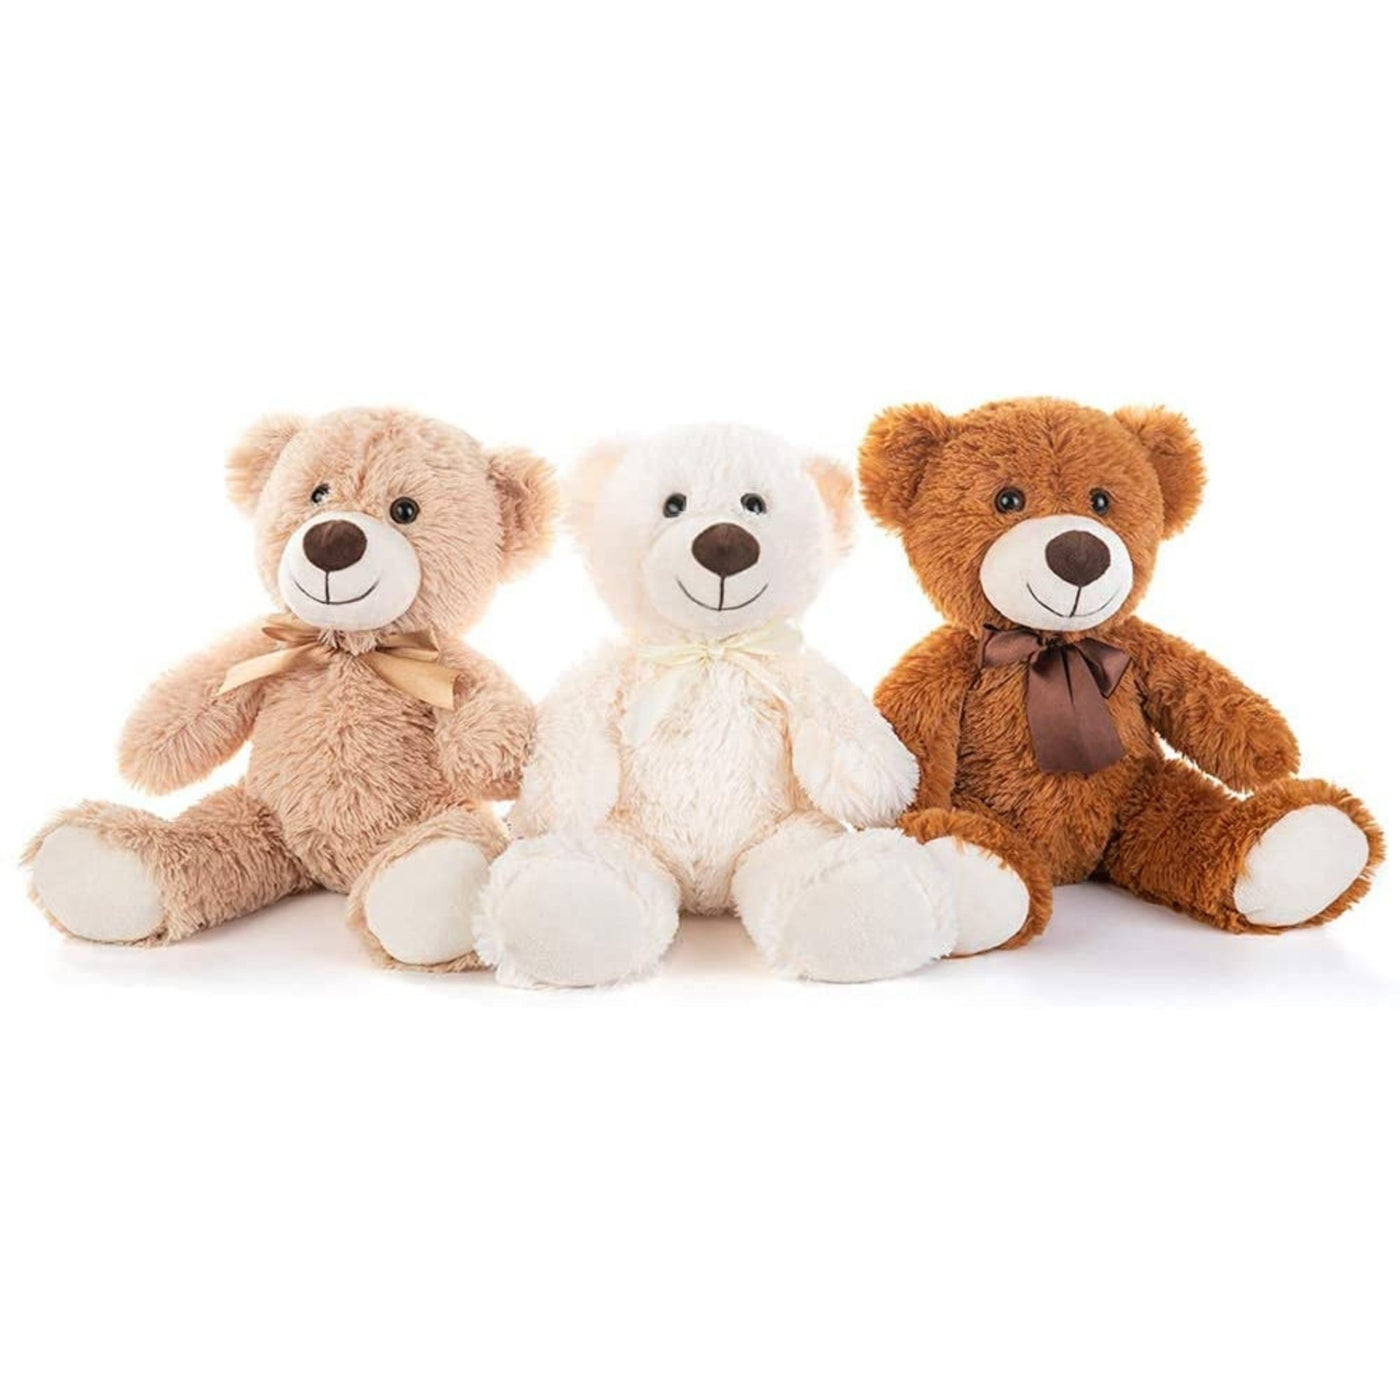 3-Pack Teddy Bears, Beige/Light Brown/Dark Brown, 13.8 Inches – MorisMos